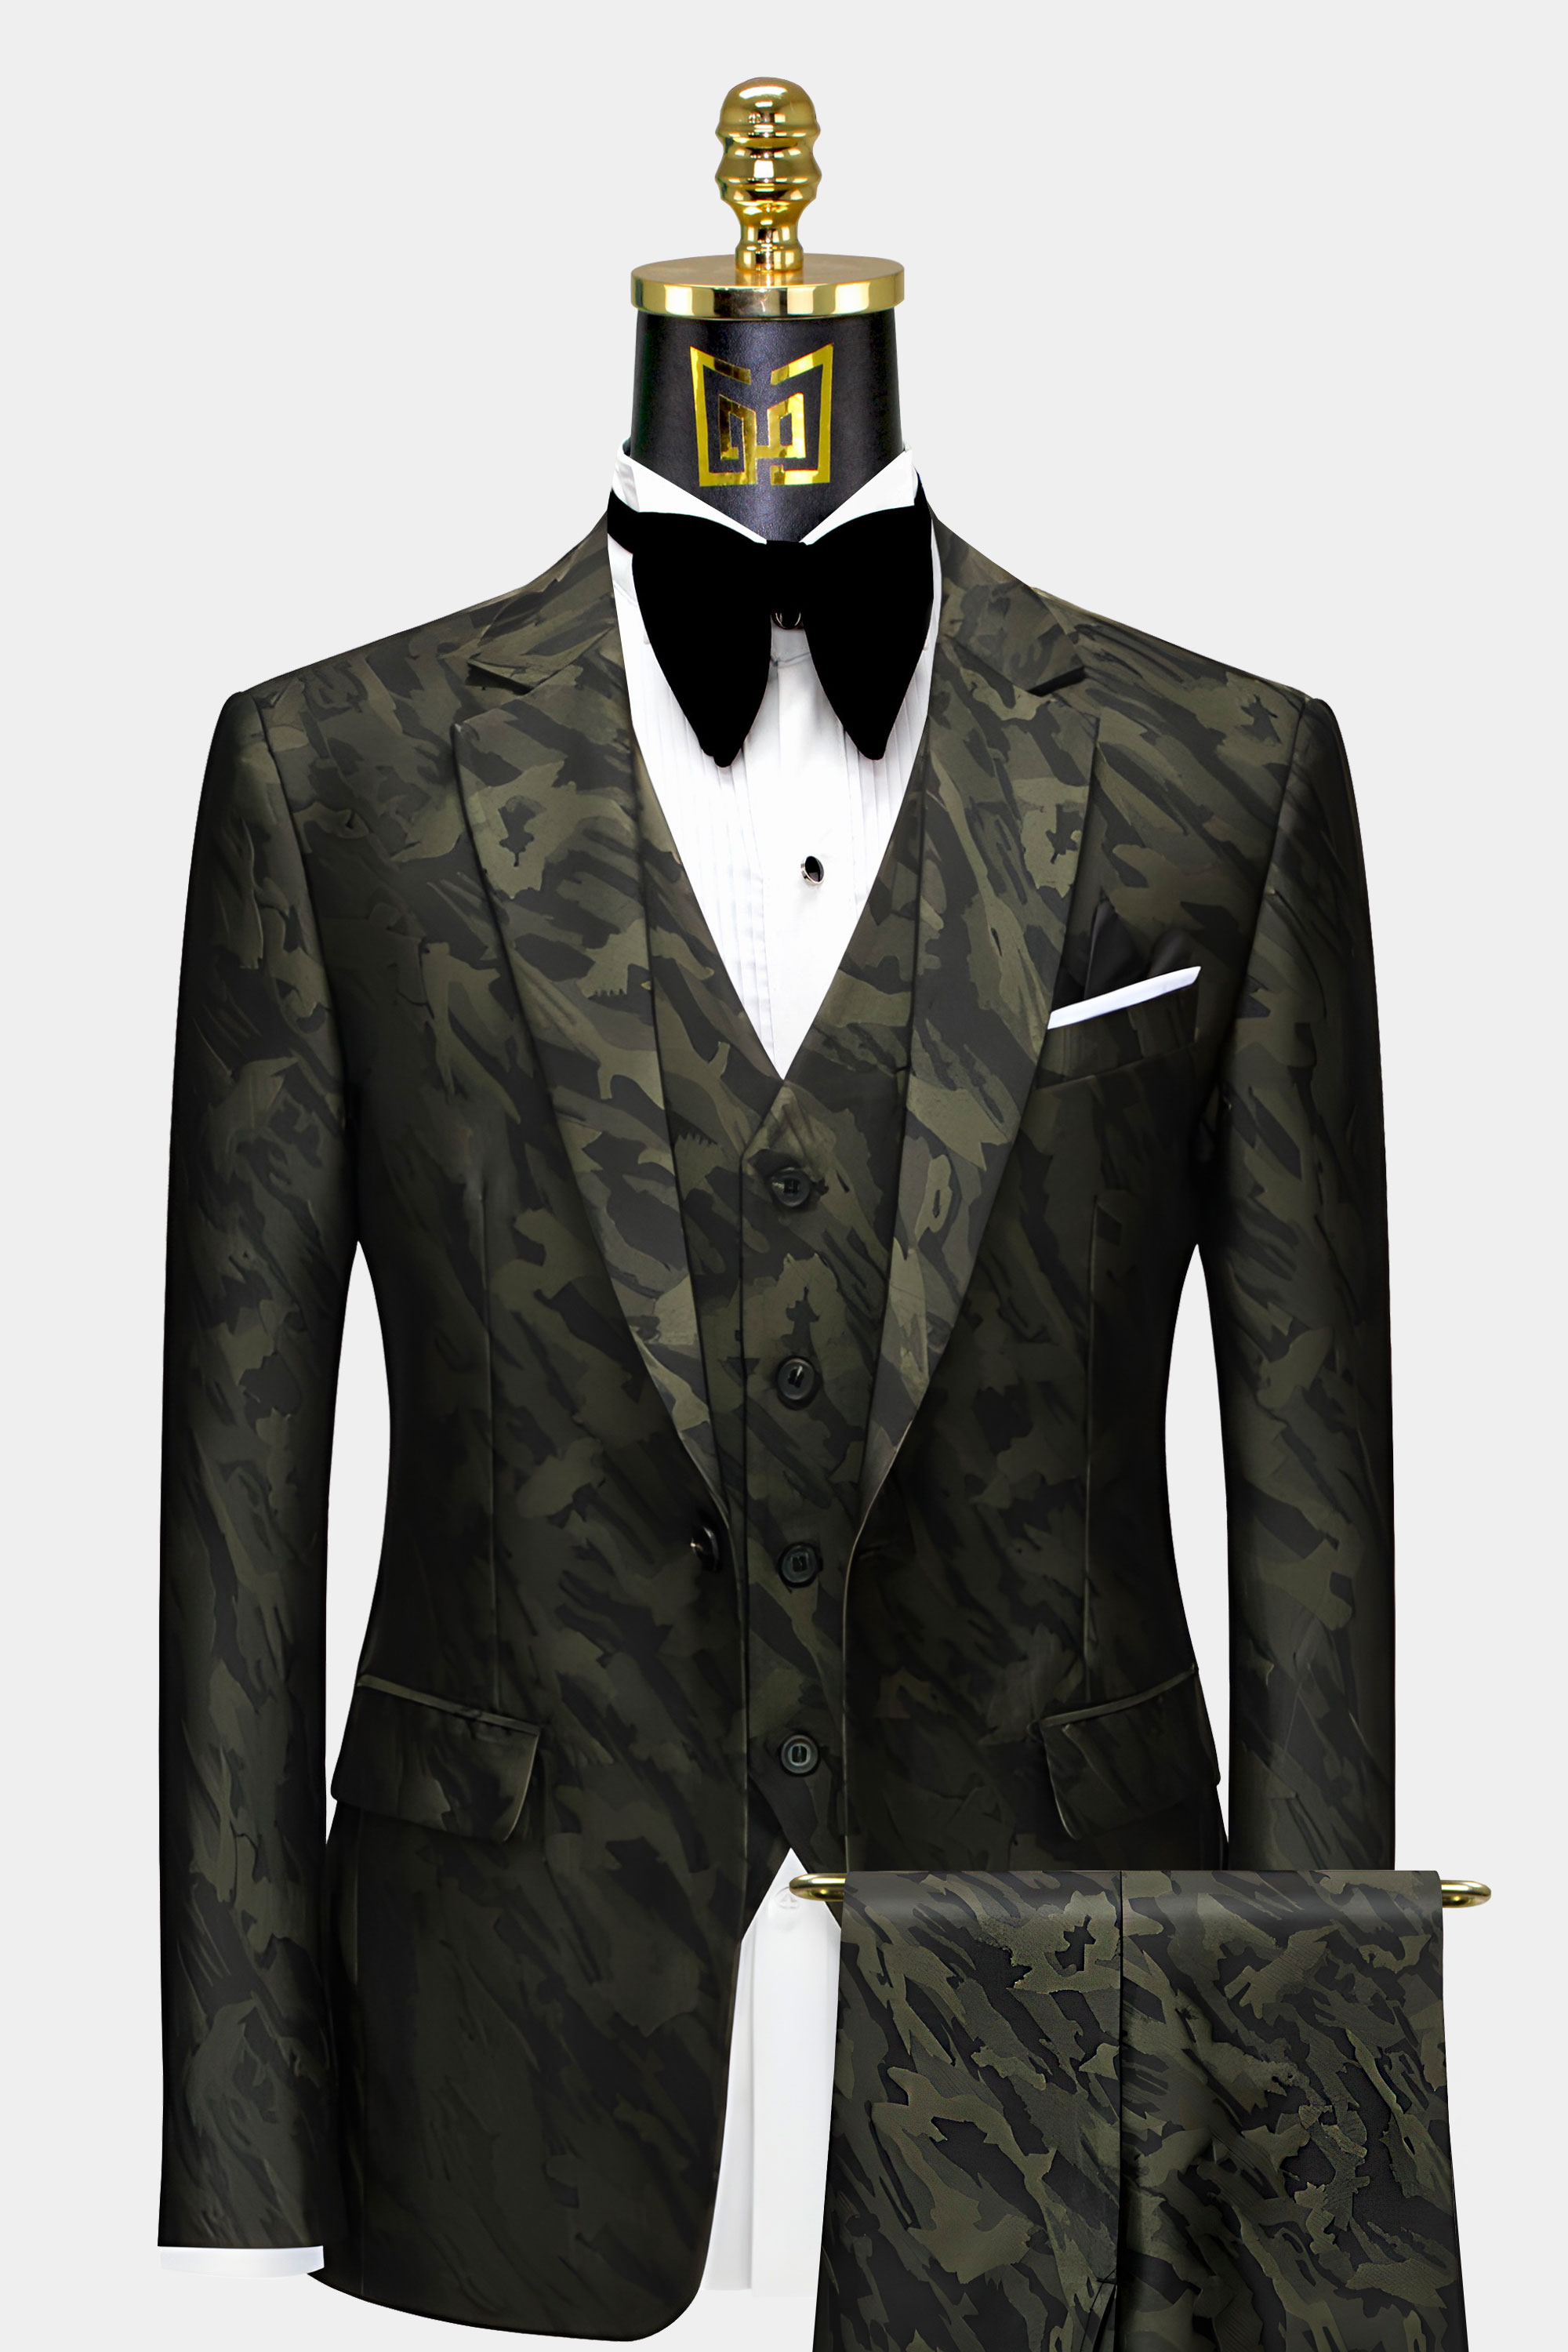 Mens-Camo-Suit-Wedding-Groom-Prom-Tuxedo-Camouflage-Suit-from-Gentlemansguru.com